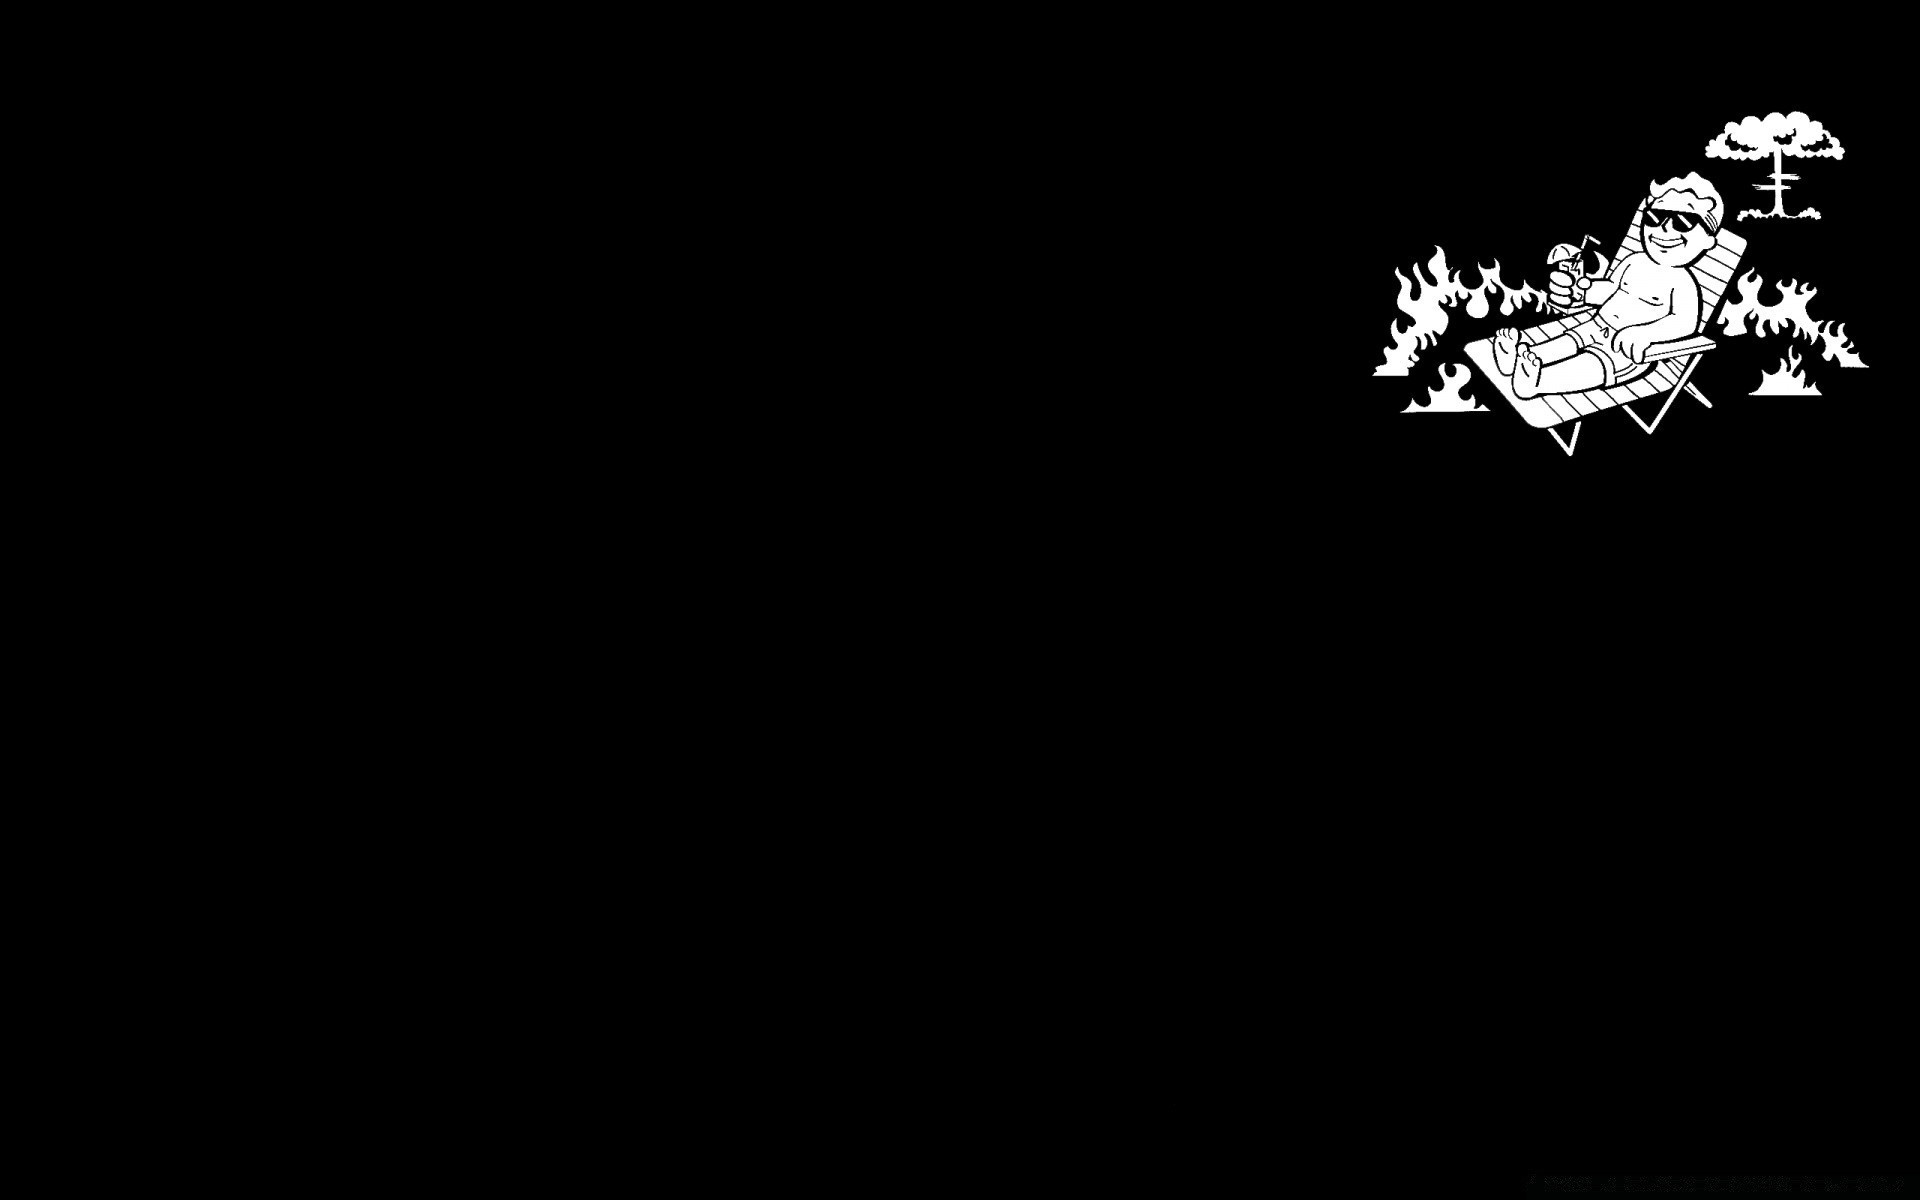 fallout луна аннотация искусство рабочего стола птица иллюстрация свет небо вектор силуэт астрономия портрет формы взрослый шаблон монохромный дизайн темный